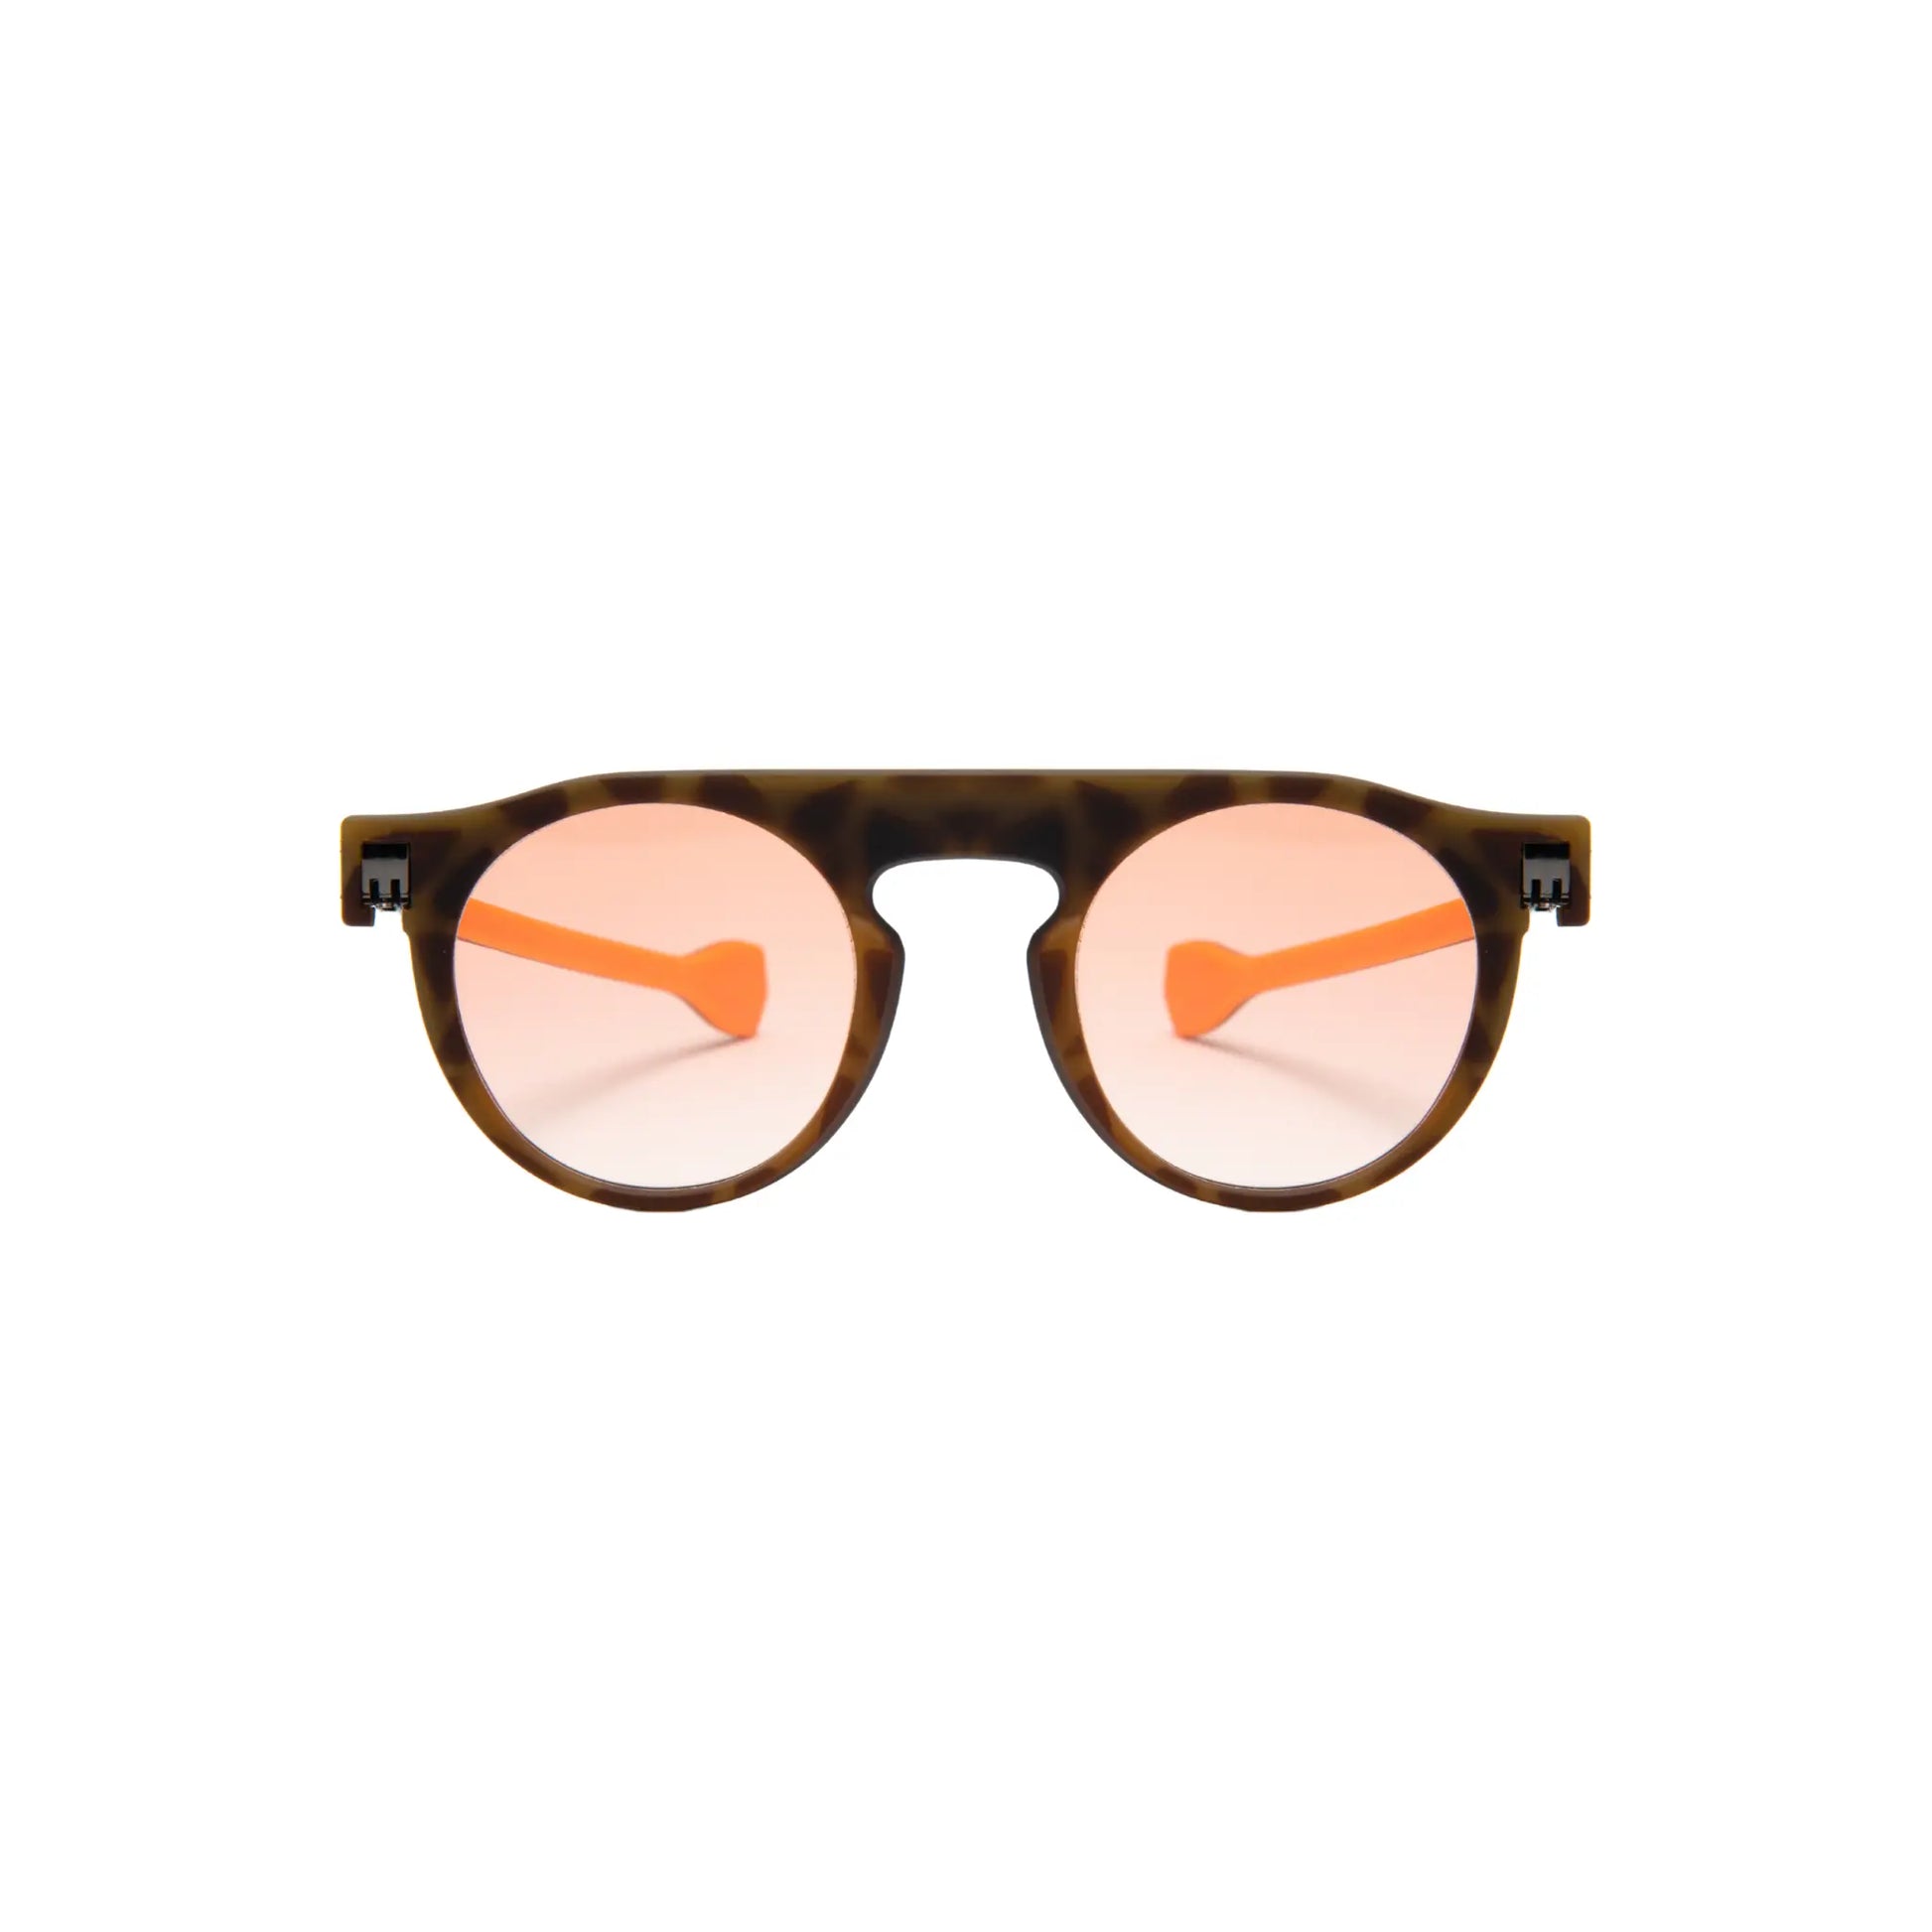 Reverso sunglasses Havana/black & orange reversible & ultra light front view 2